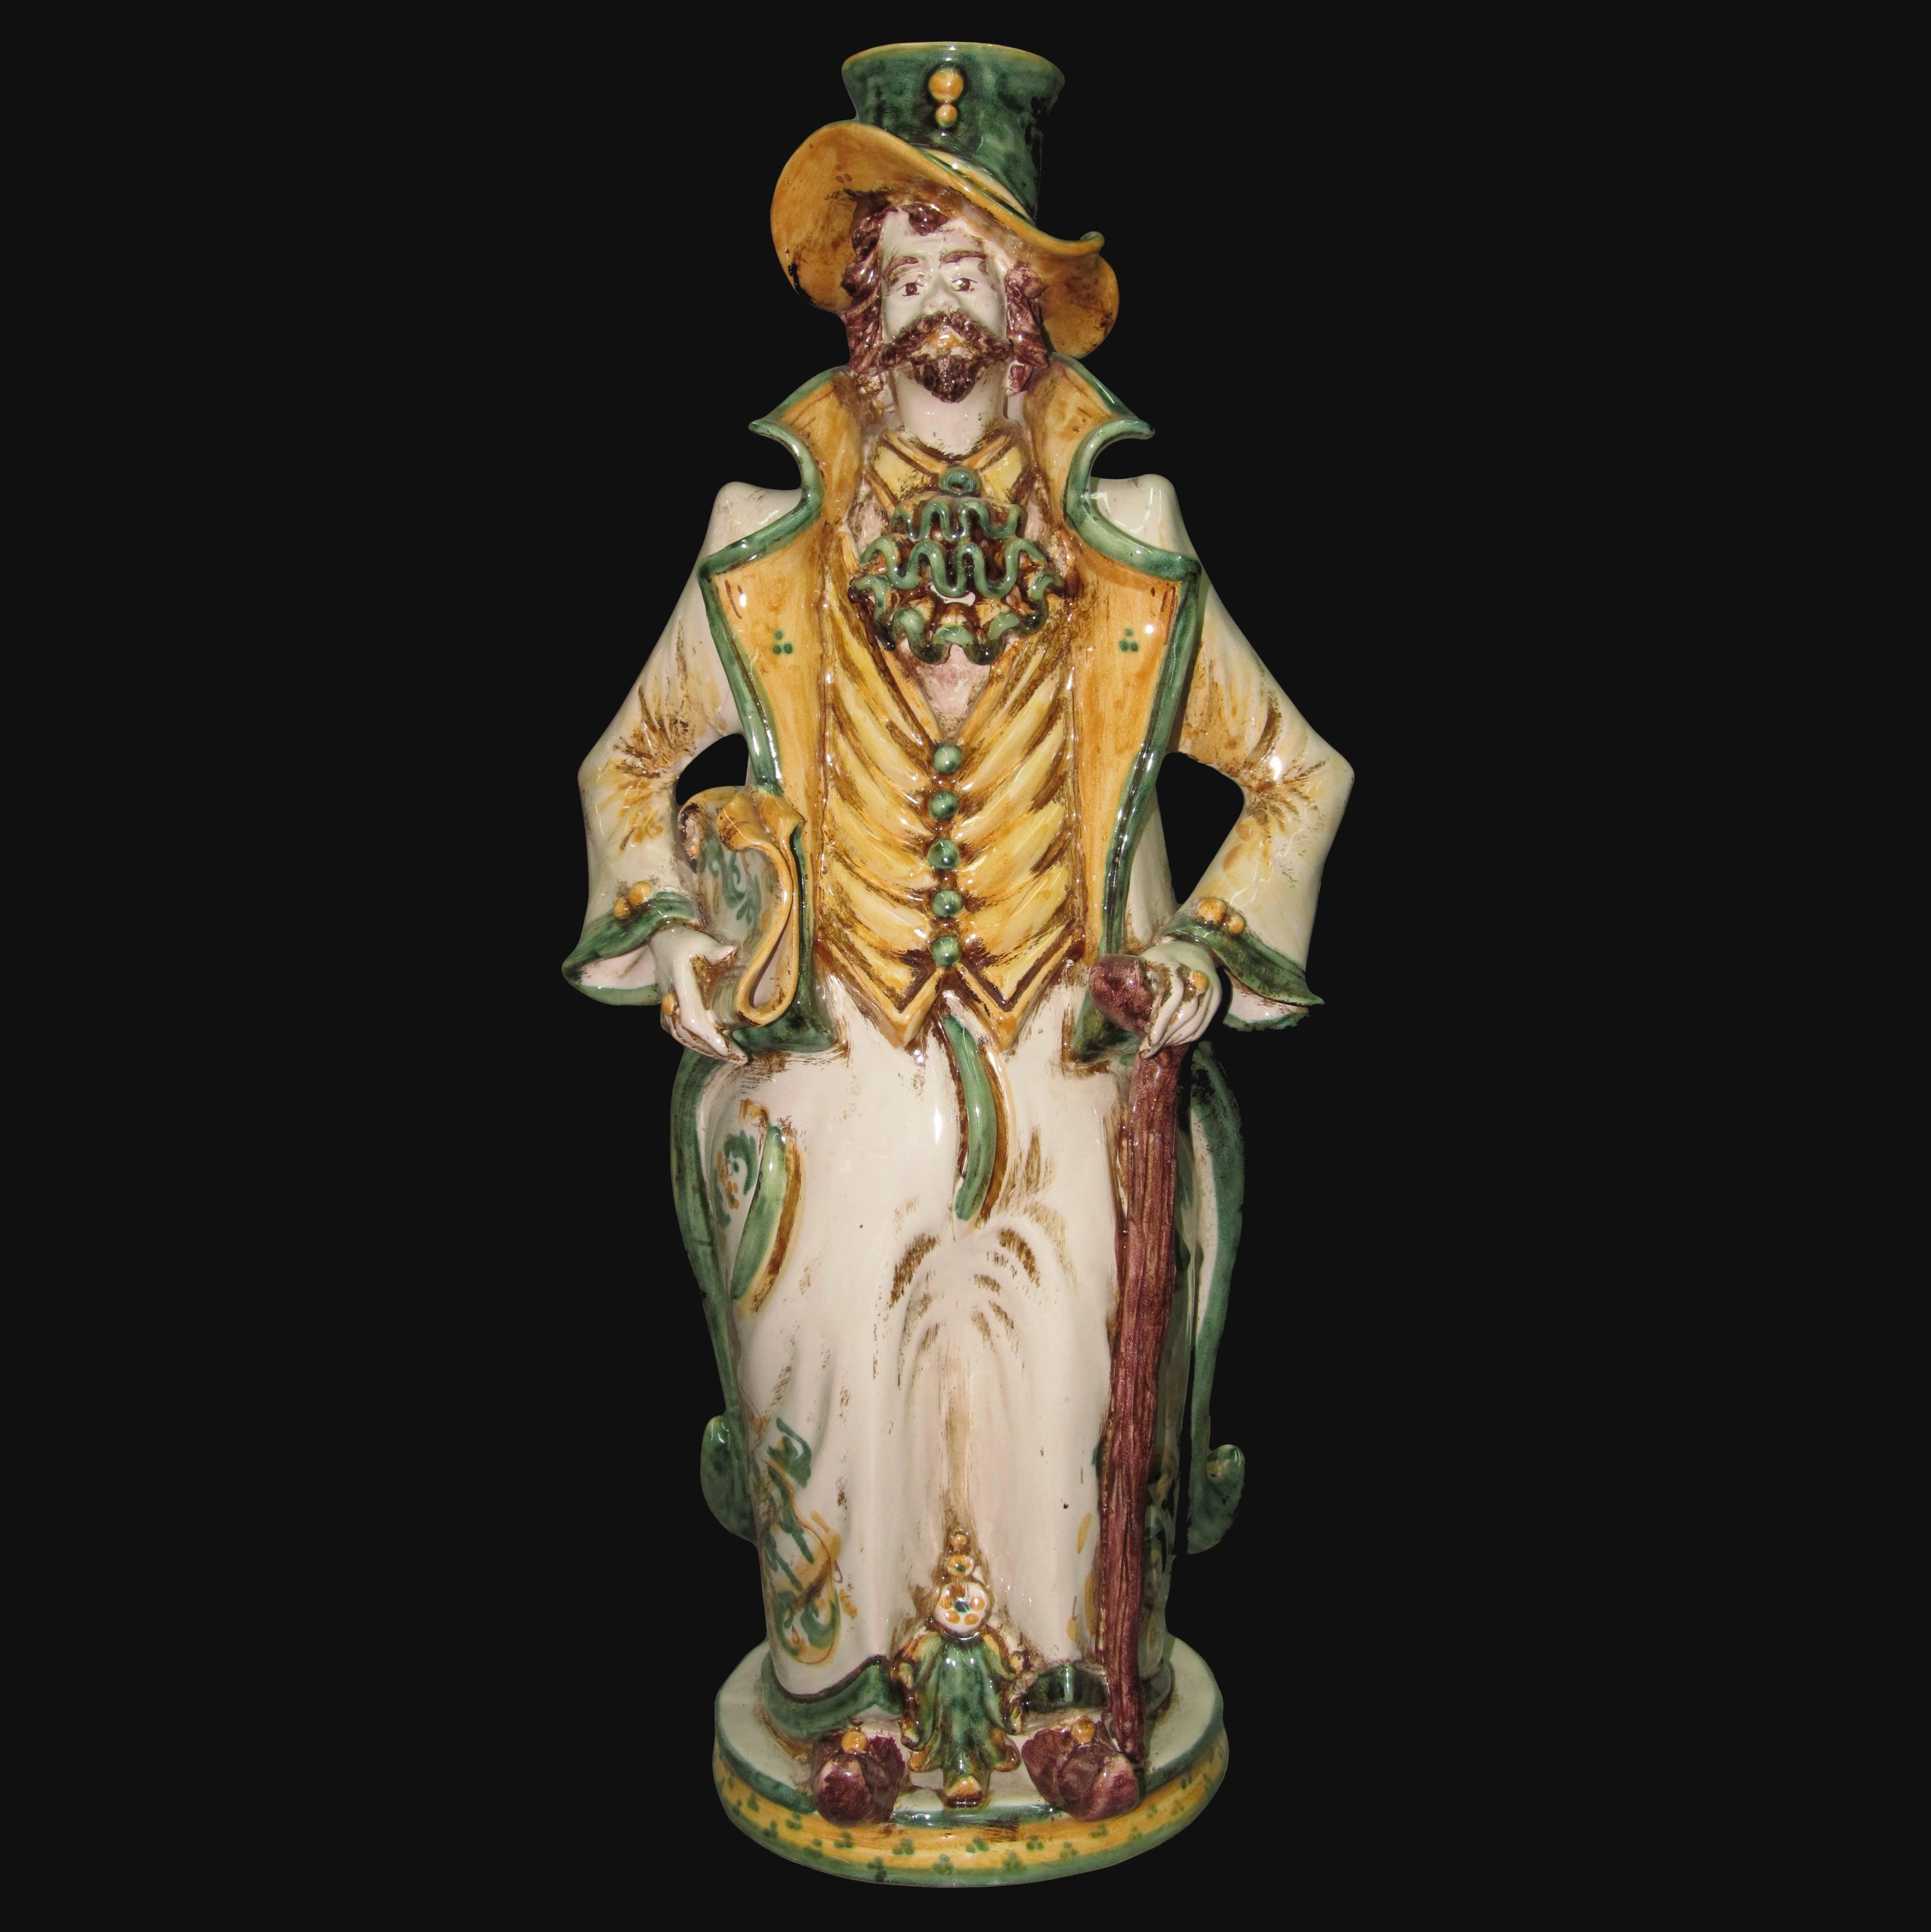 Lumiera grande uomo h 40 in verde/arancio - Modellate a mano - Ceramiche di Caltagirone Sofia